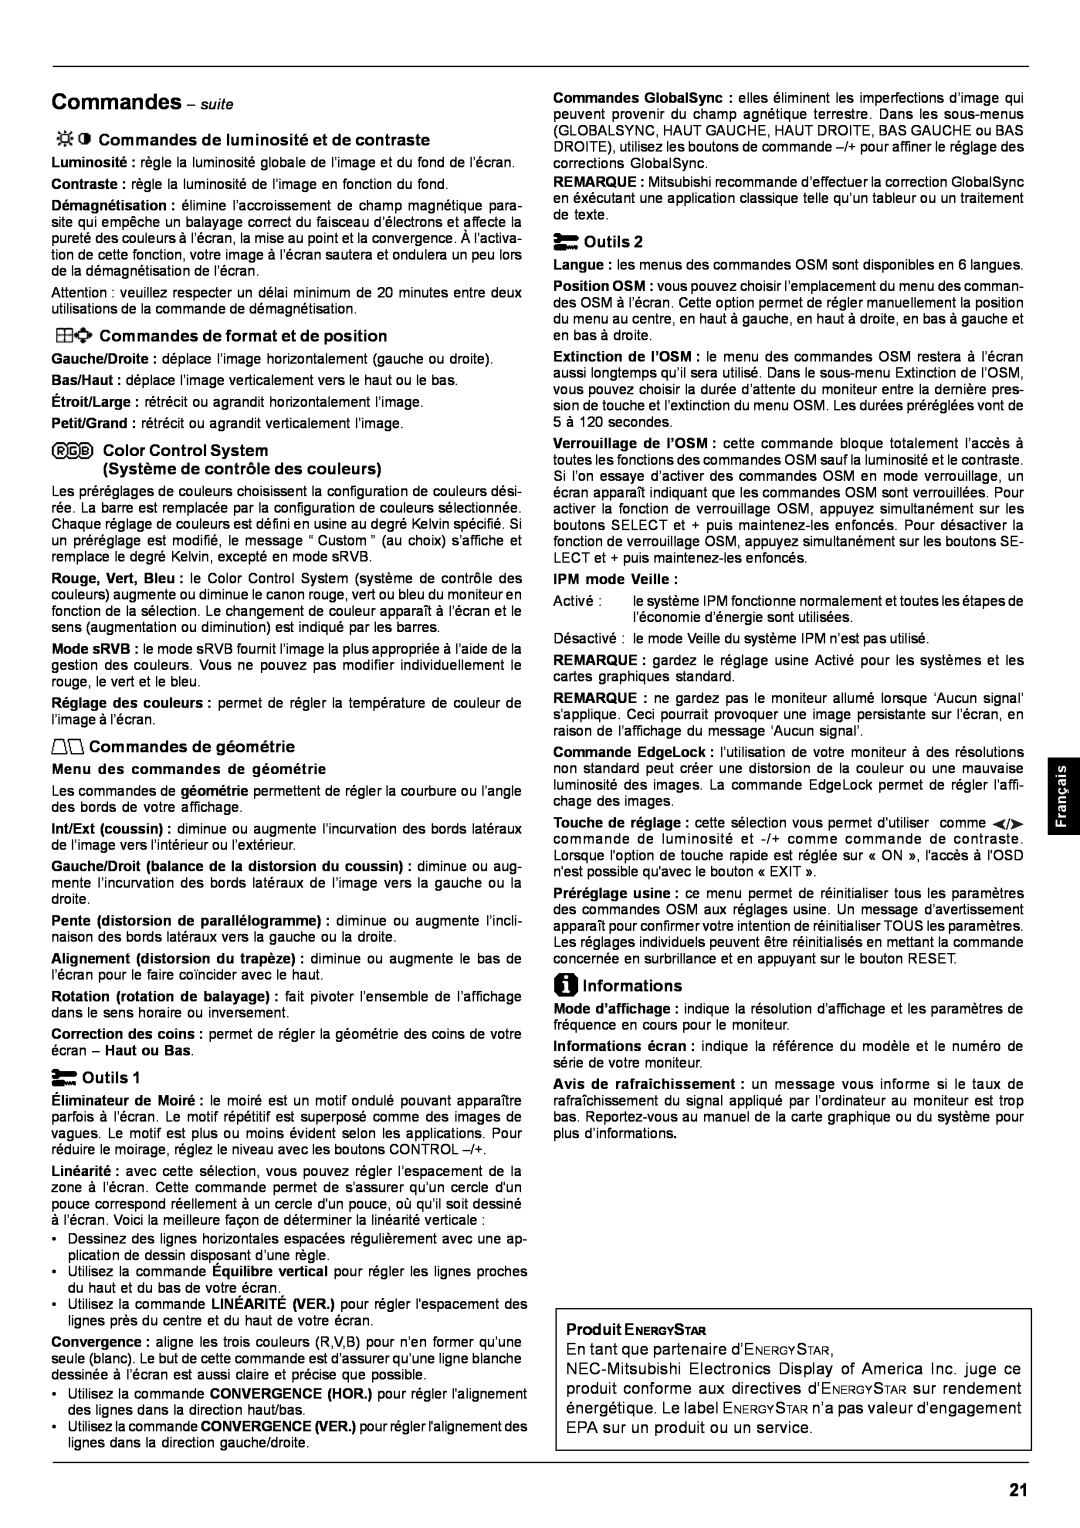 Mitsubishi Electronics Pro 930SB user manual Commandes - suite, En tant que partenaire d’ENERGYSTAR, Français 